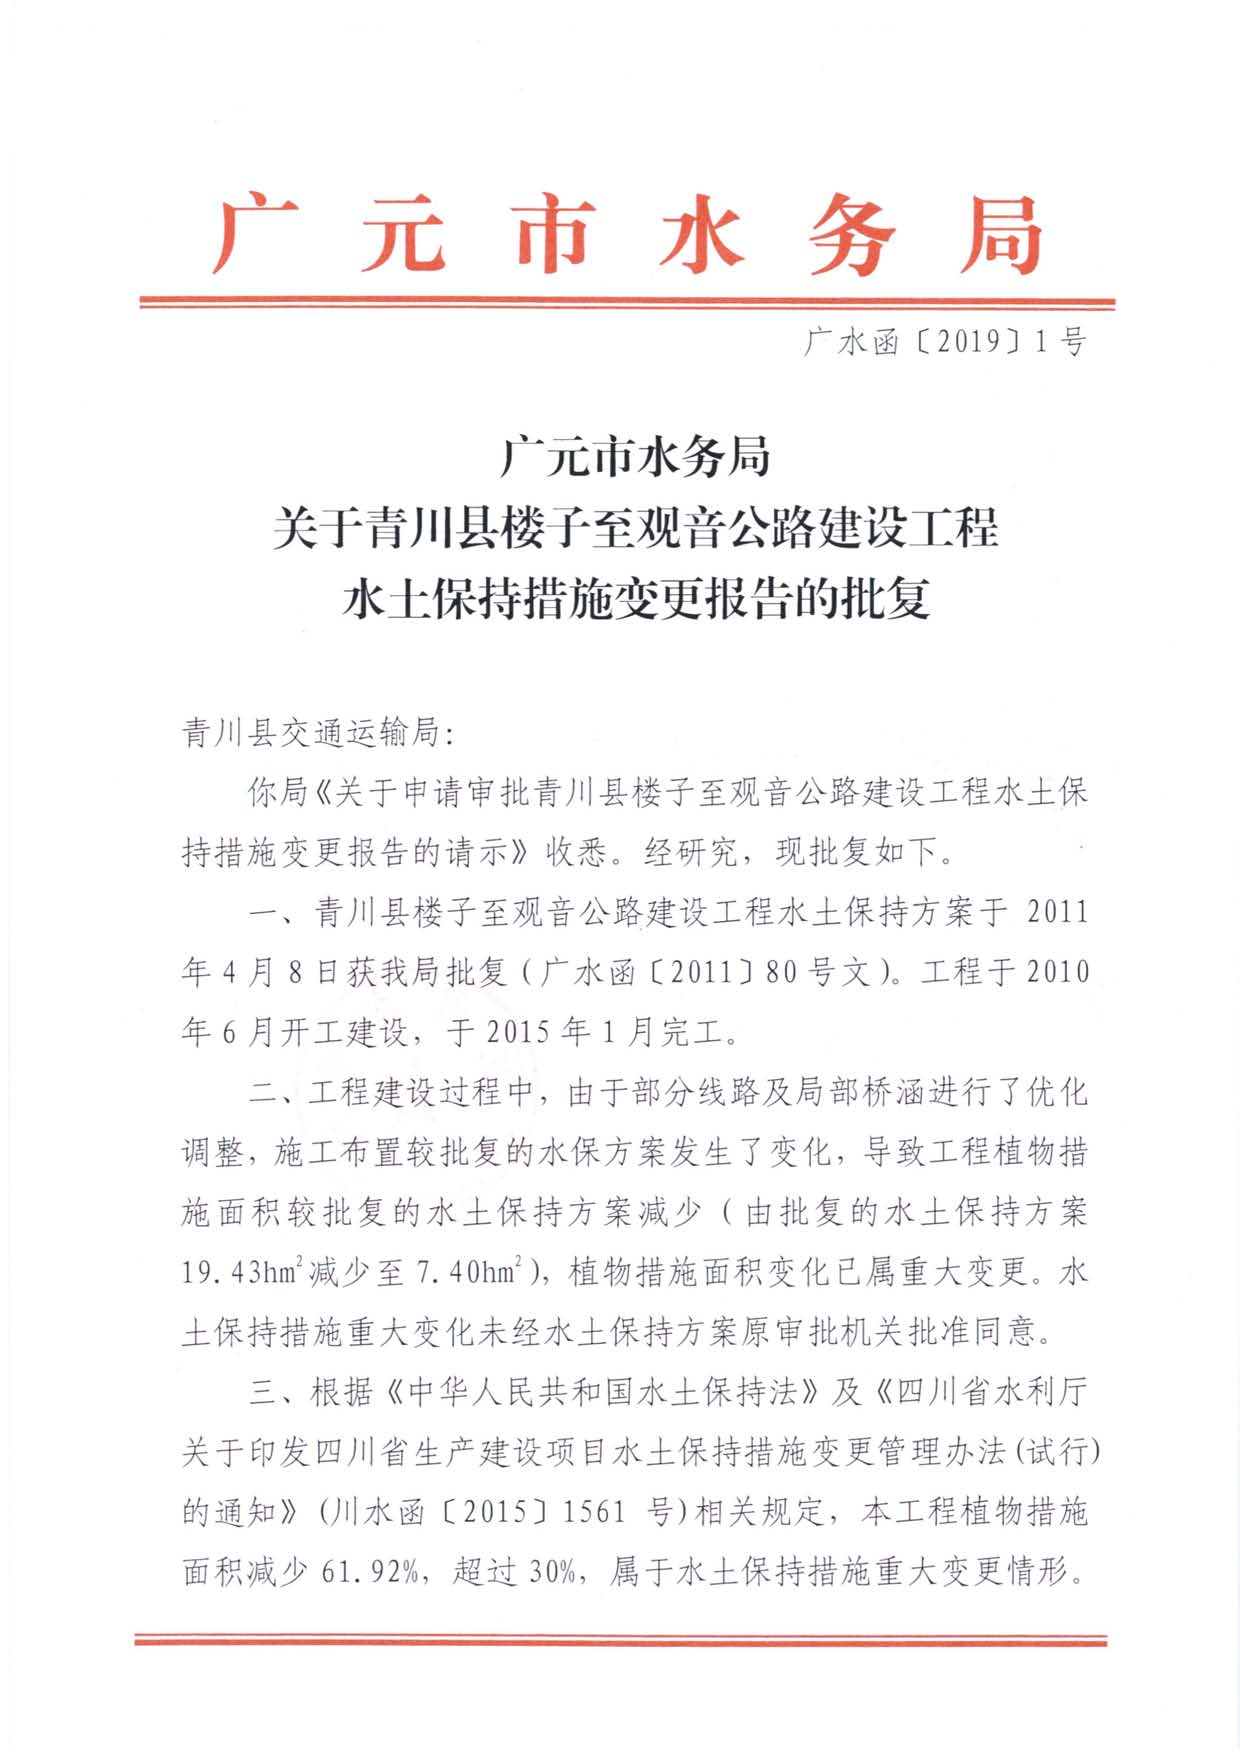 青川县楼子至观音公路建设工程水土保持措施变更报告批复_页面_1.jpg